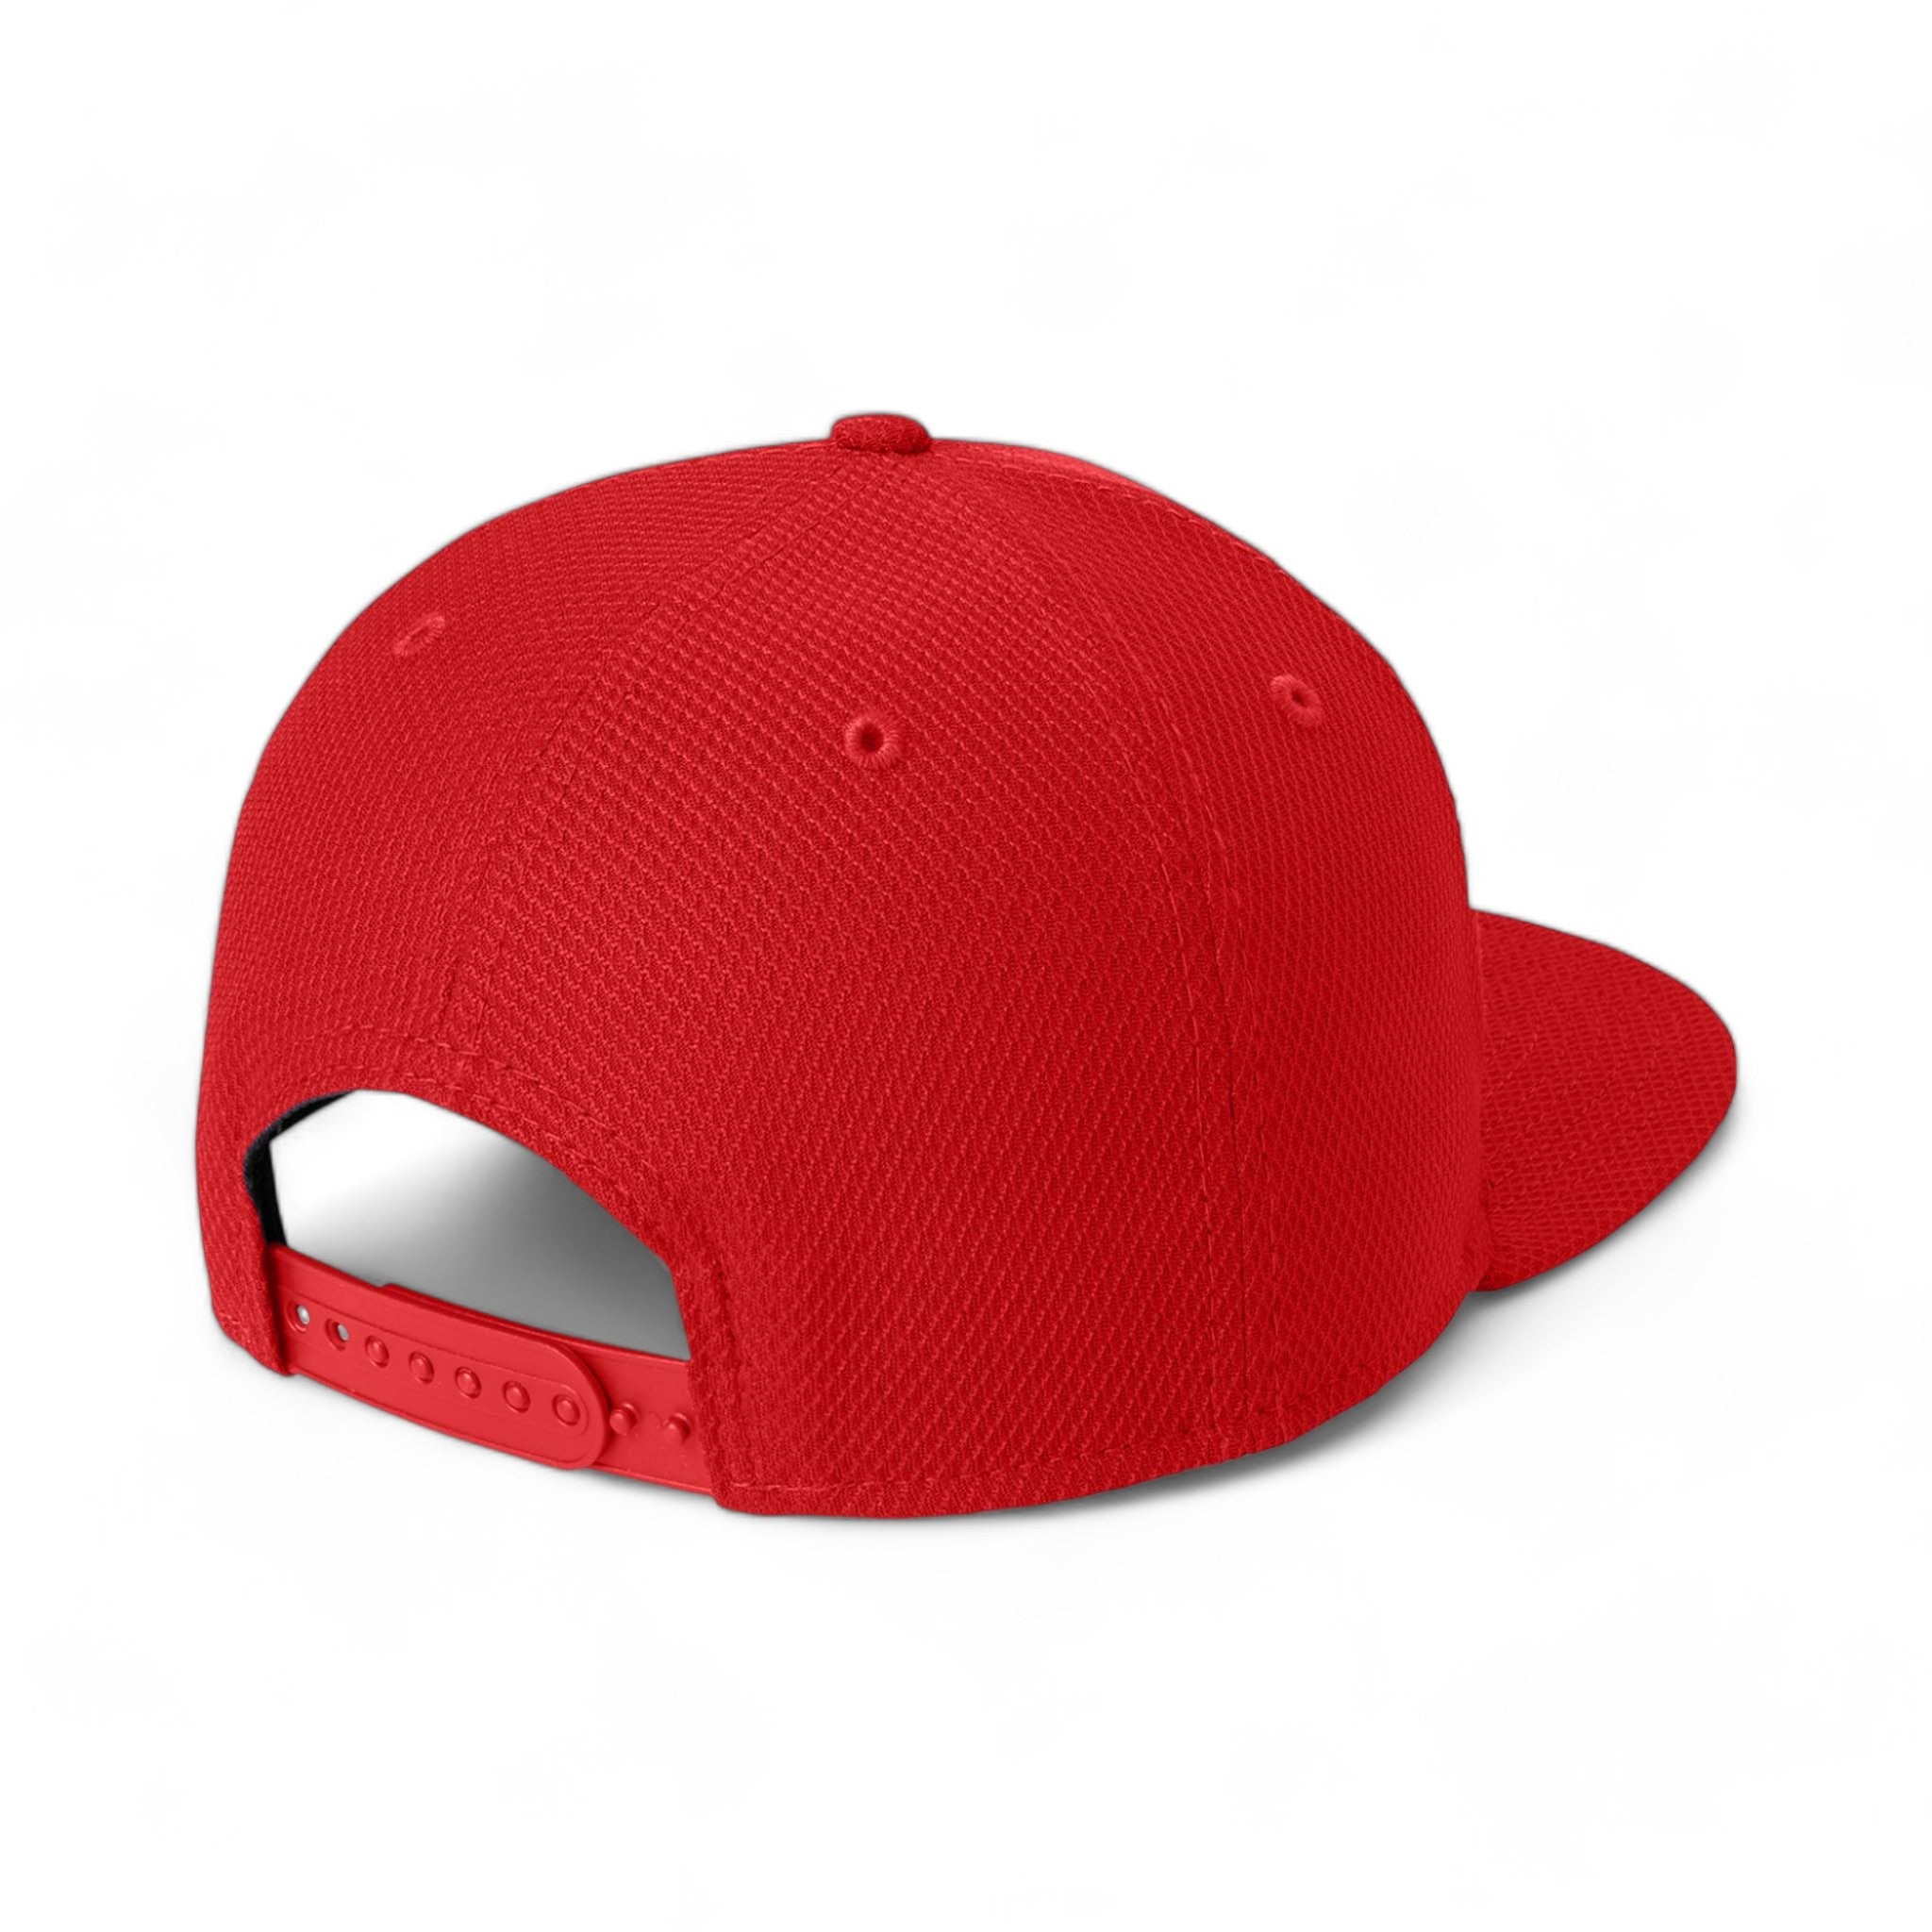 Back view of New Era NE404 custom hat in scarlet